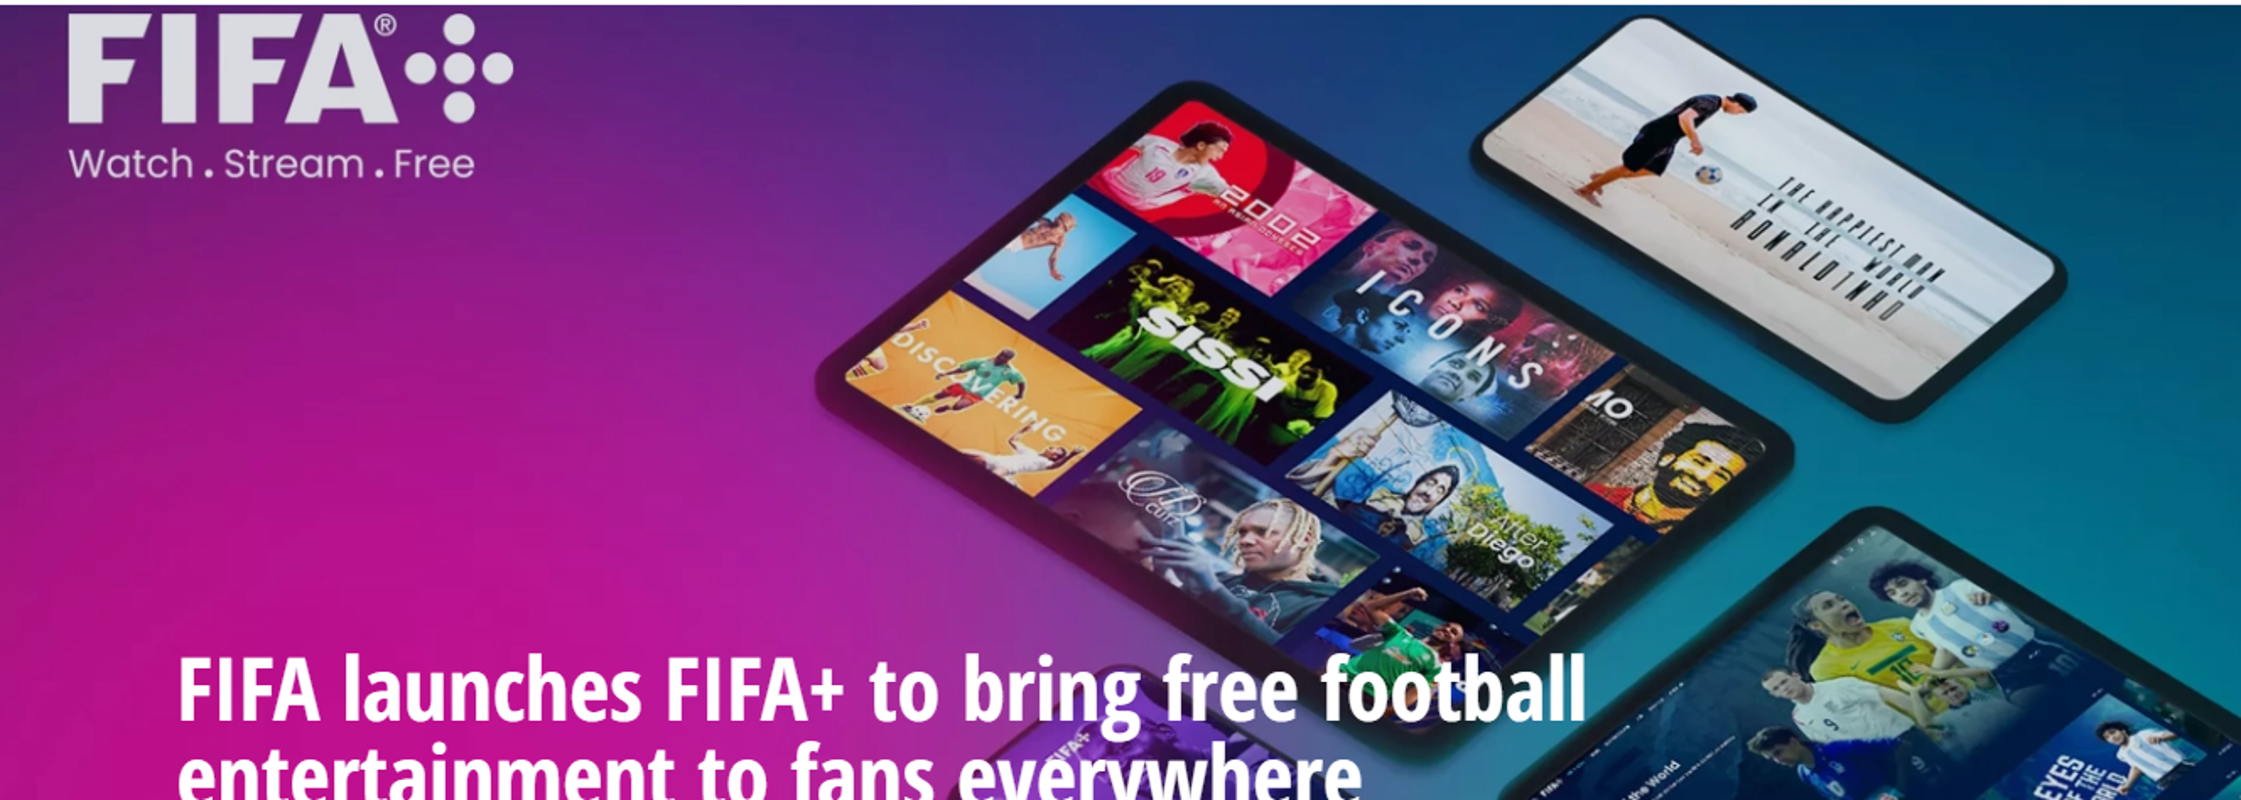 Home page del nuovo sito Fifa+ per vedere partite di calcio in streaming